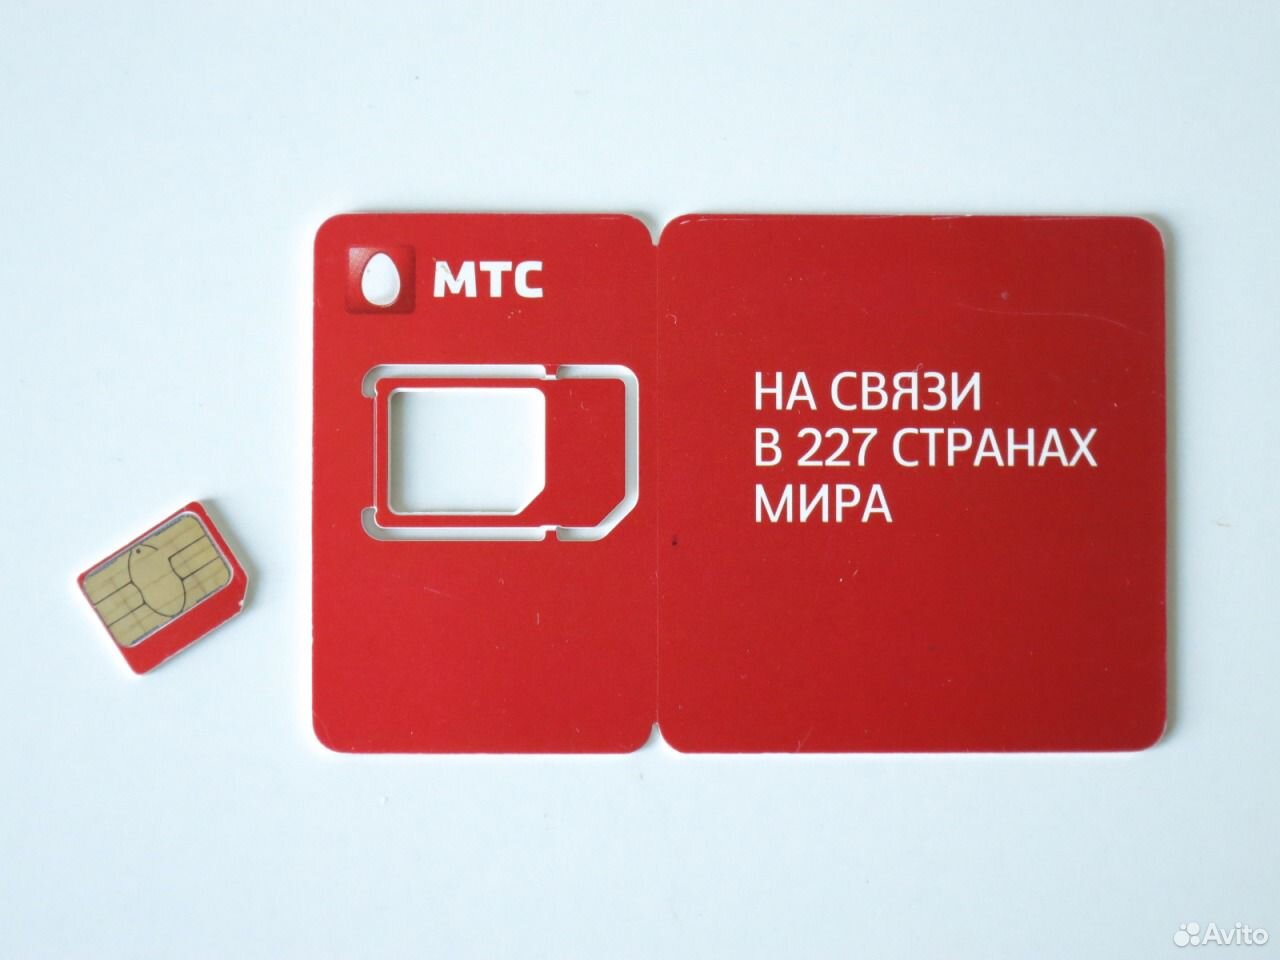 Недействительная симарта. SIM карта МТС белая с красной полосой. SIM карта МТС С новым логотипом. Карта МТС магнит мир.